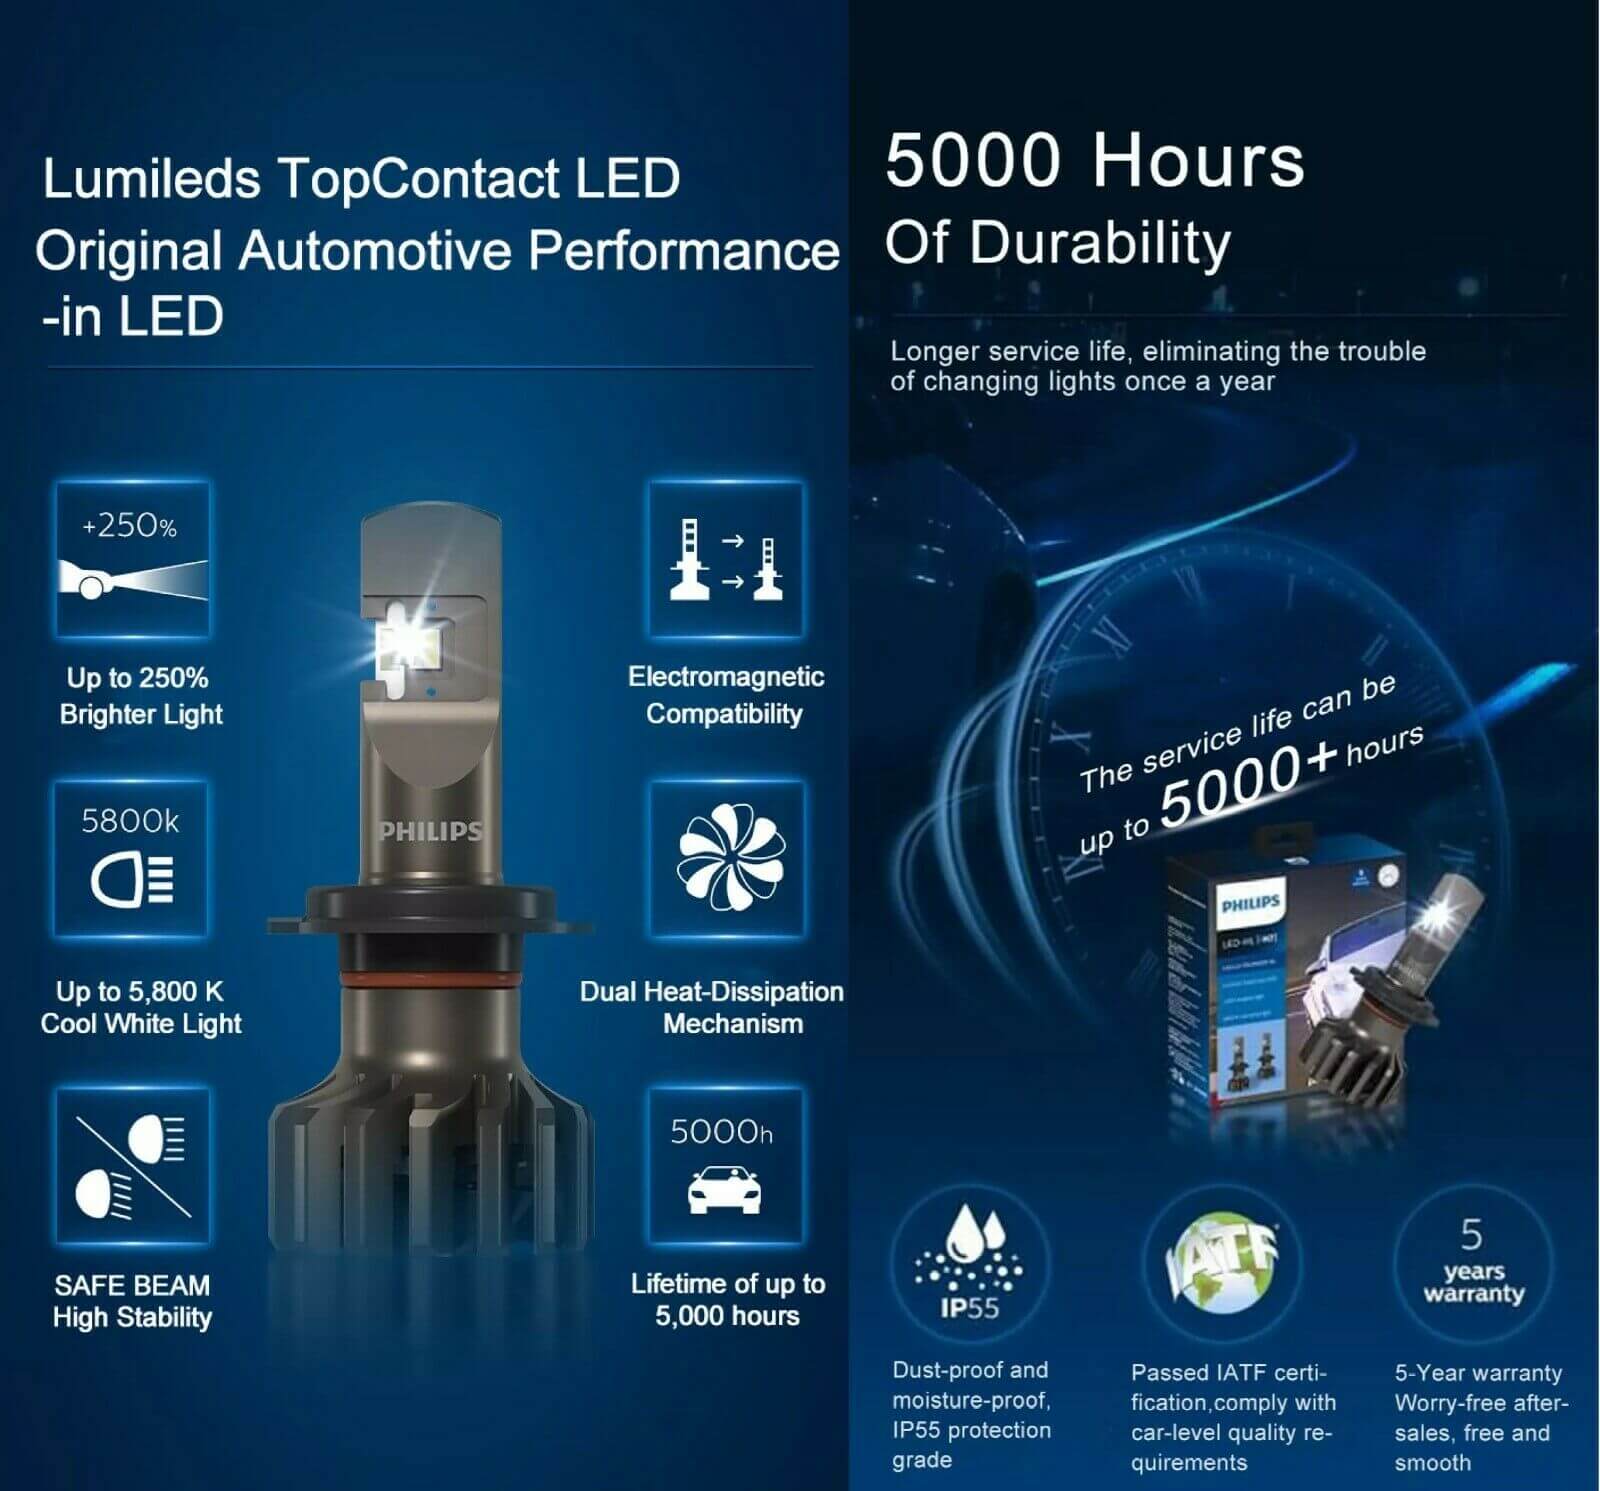 Bóng đèn pha LED Philips H4 Pro 9000 LED 11342 U90 CW X2 tăng sáng 250% cho xe hơi xe ô tô